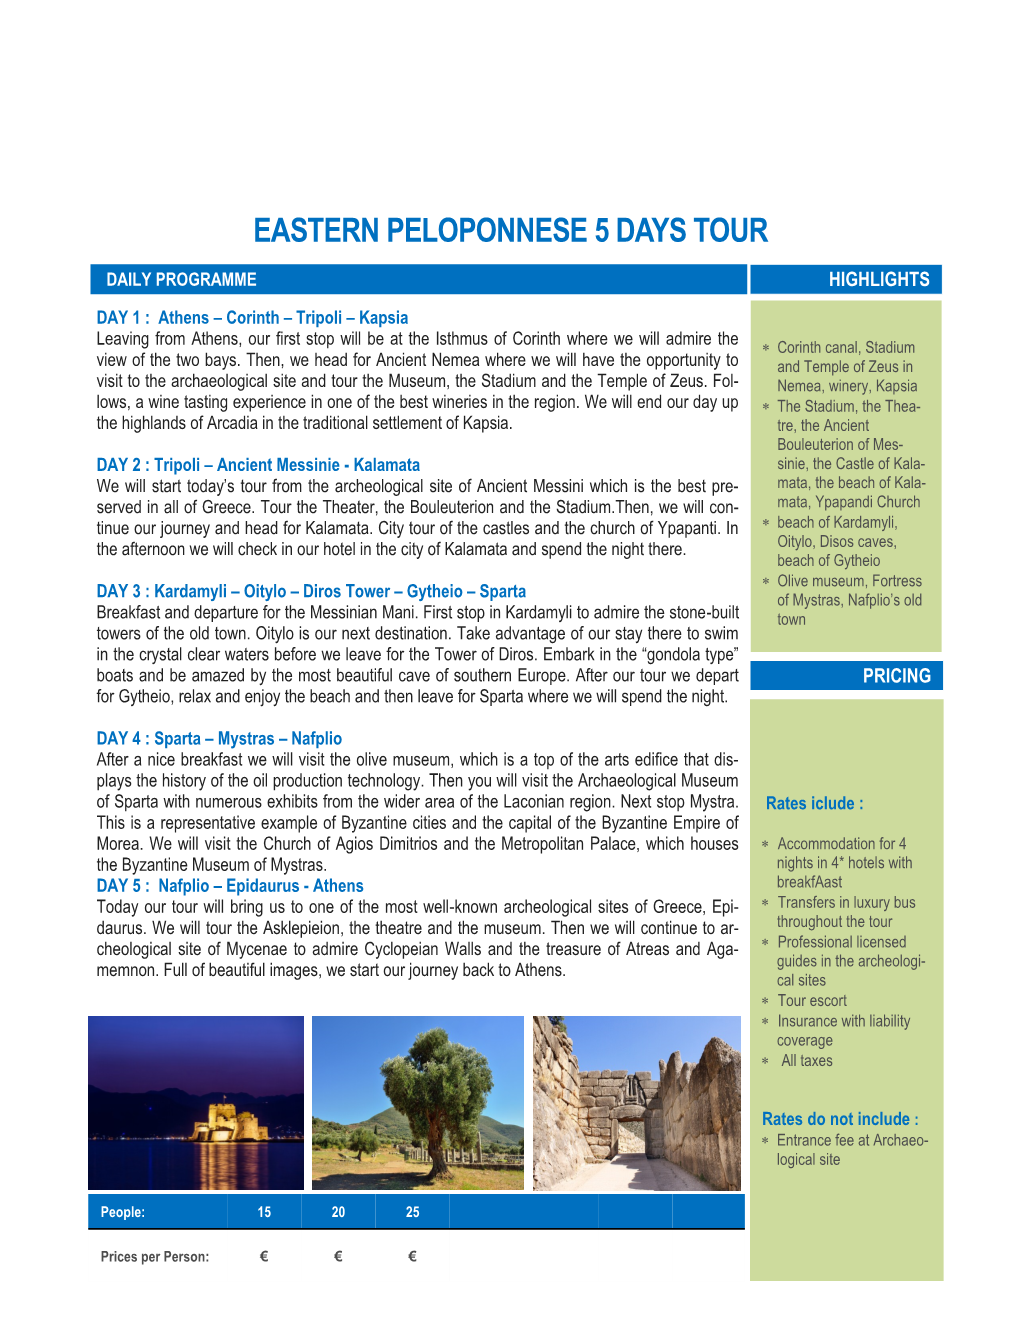 Eastern Peloponnese 5 Days Tour